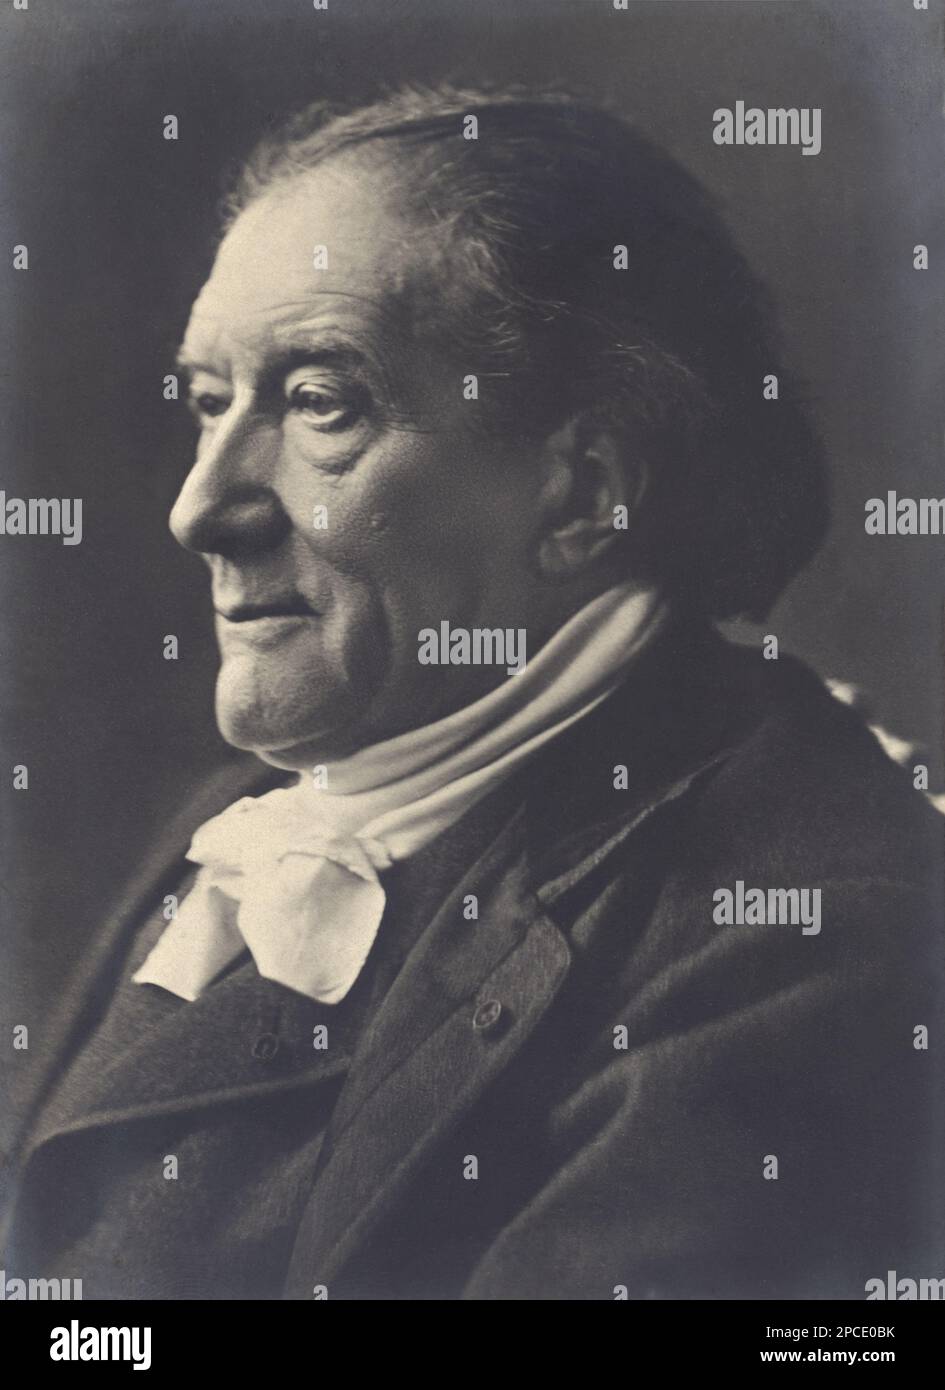 Il drammaturgo francese VicTORIEN SARDOU ( 1831 - 1908 ) - LETTERATO - SCRITTORE - LETTERATURA - LETTERATURA - drammaturgo - TEATRO - TEATRO - TEATRO - commediografo - RITRATTO - ritratto - profilo - colletto - fiocco - fiocco ---- Archivio GBB Foto Stock